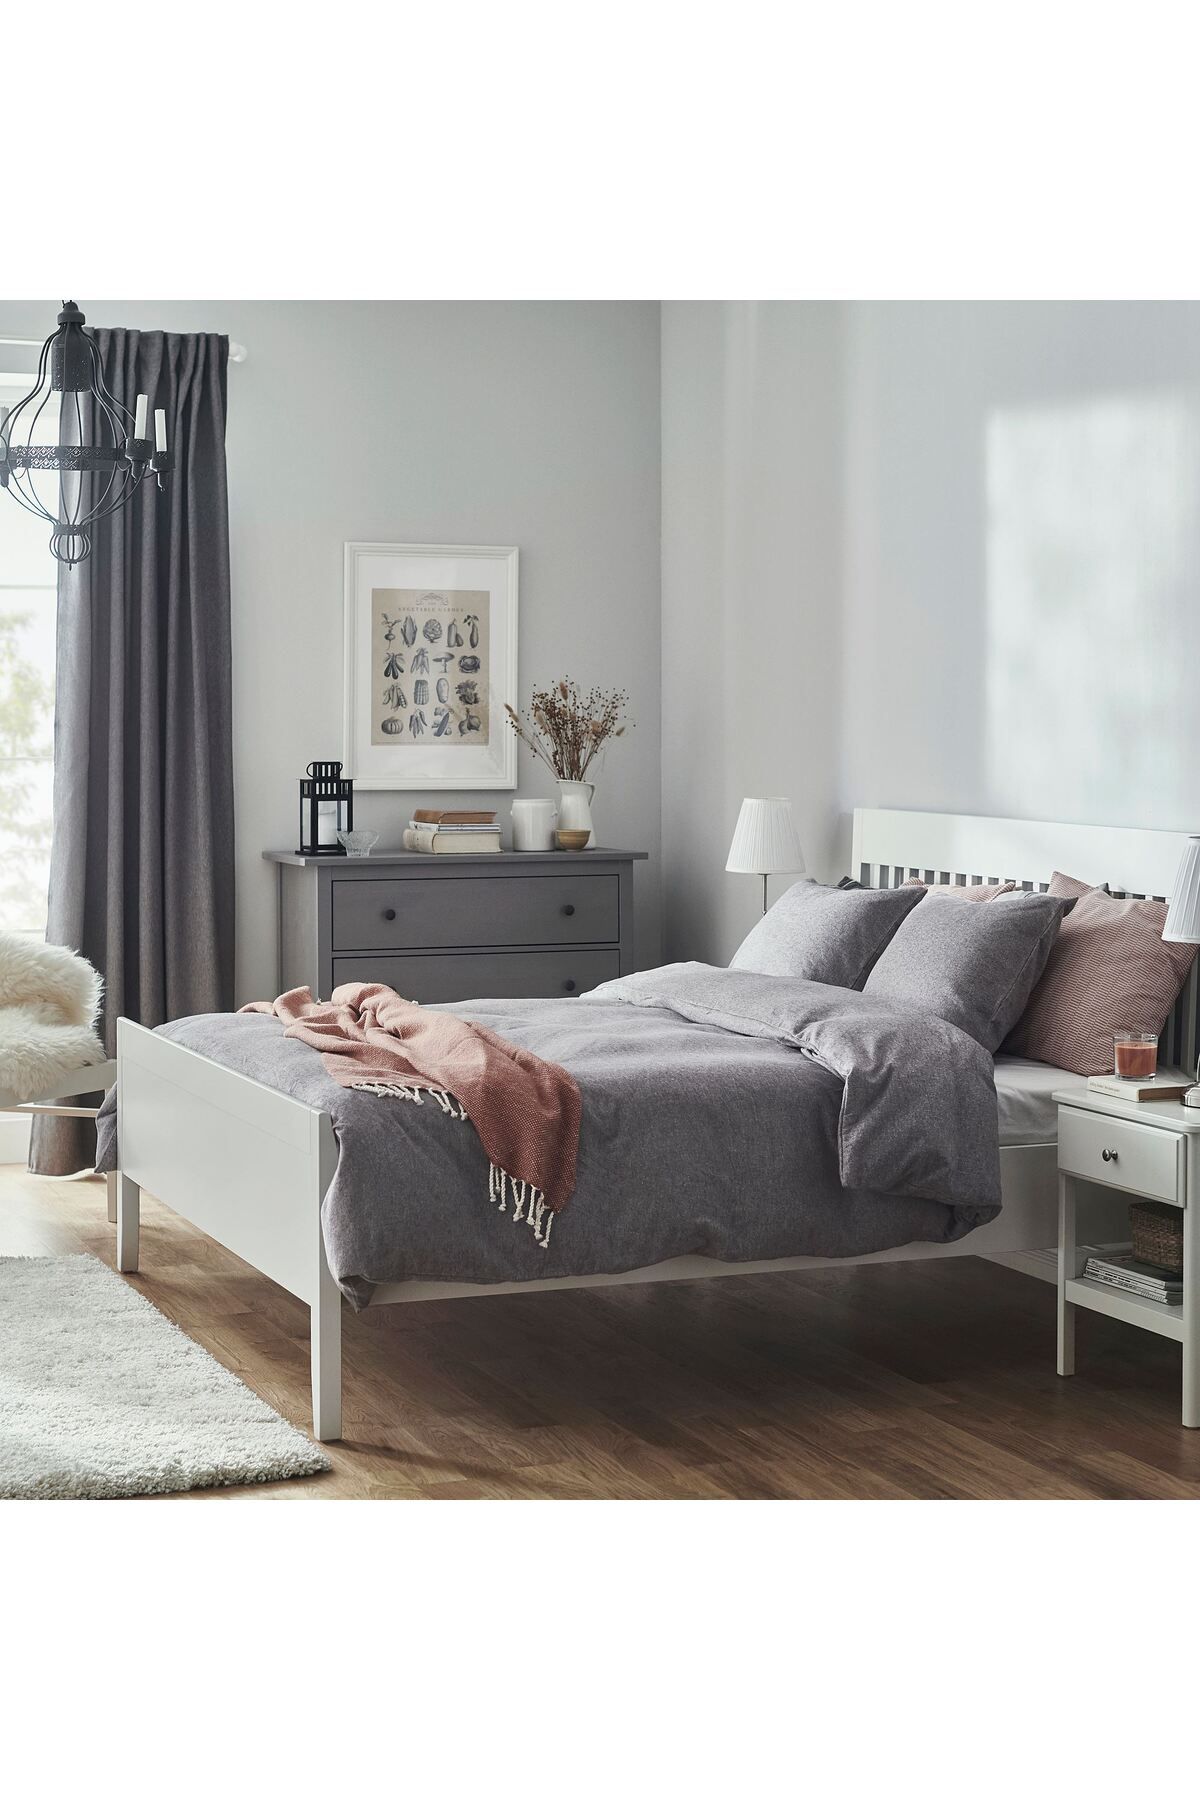 IKEA çift kişilik nevresim seti, koyu gri-beyaz, 240x220/50x60 cm saf pamuktan yapılmıştır